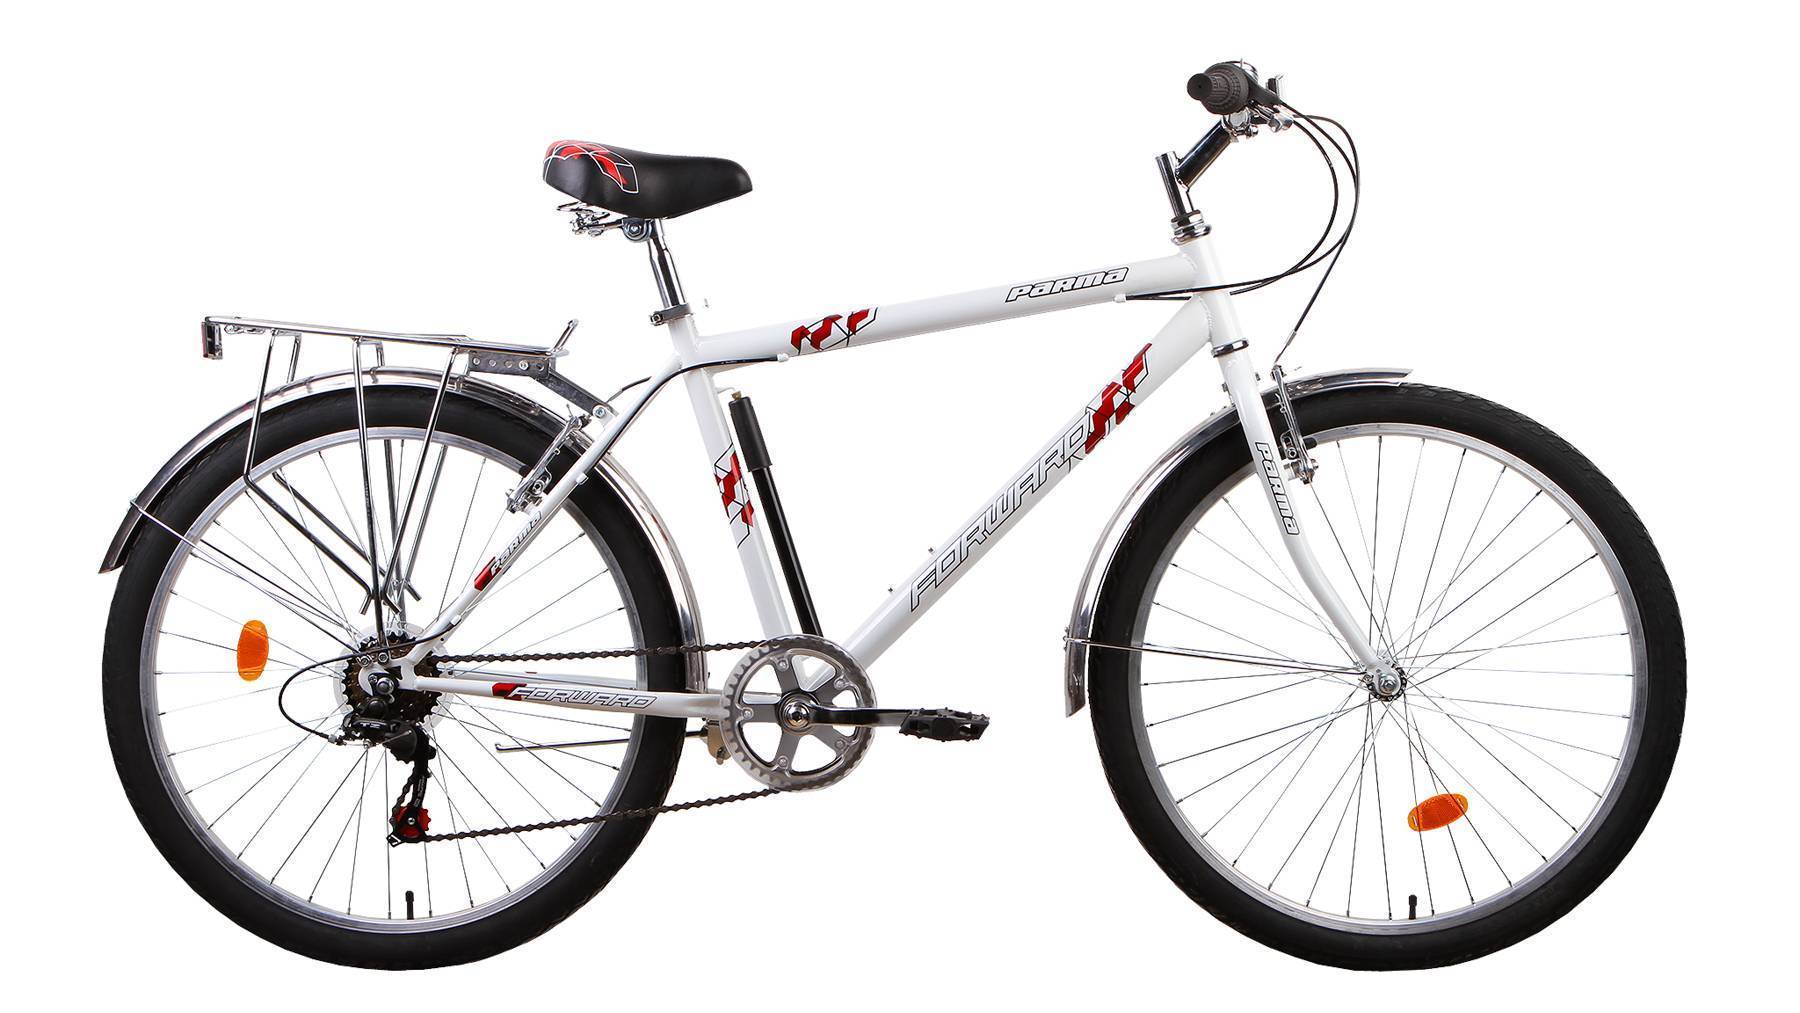 Велосипед купить в москве взрослый мужской недорого. Forward Parma 2.0. Велосипед forward Parma. Велосипед форвард Парма. Велосипед форвард 2000.